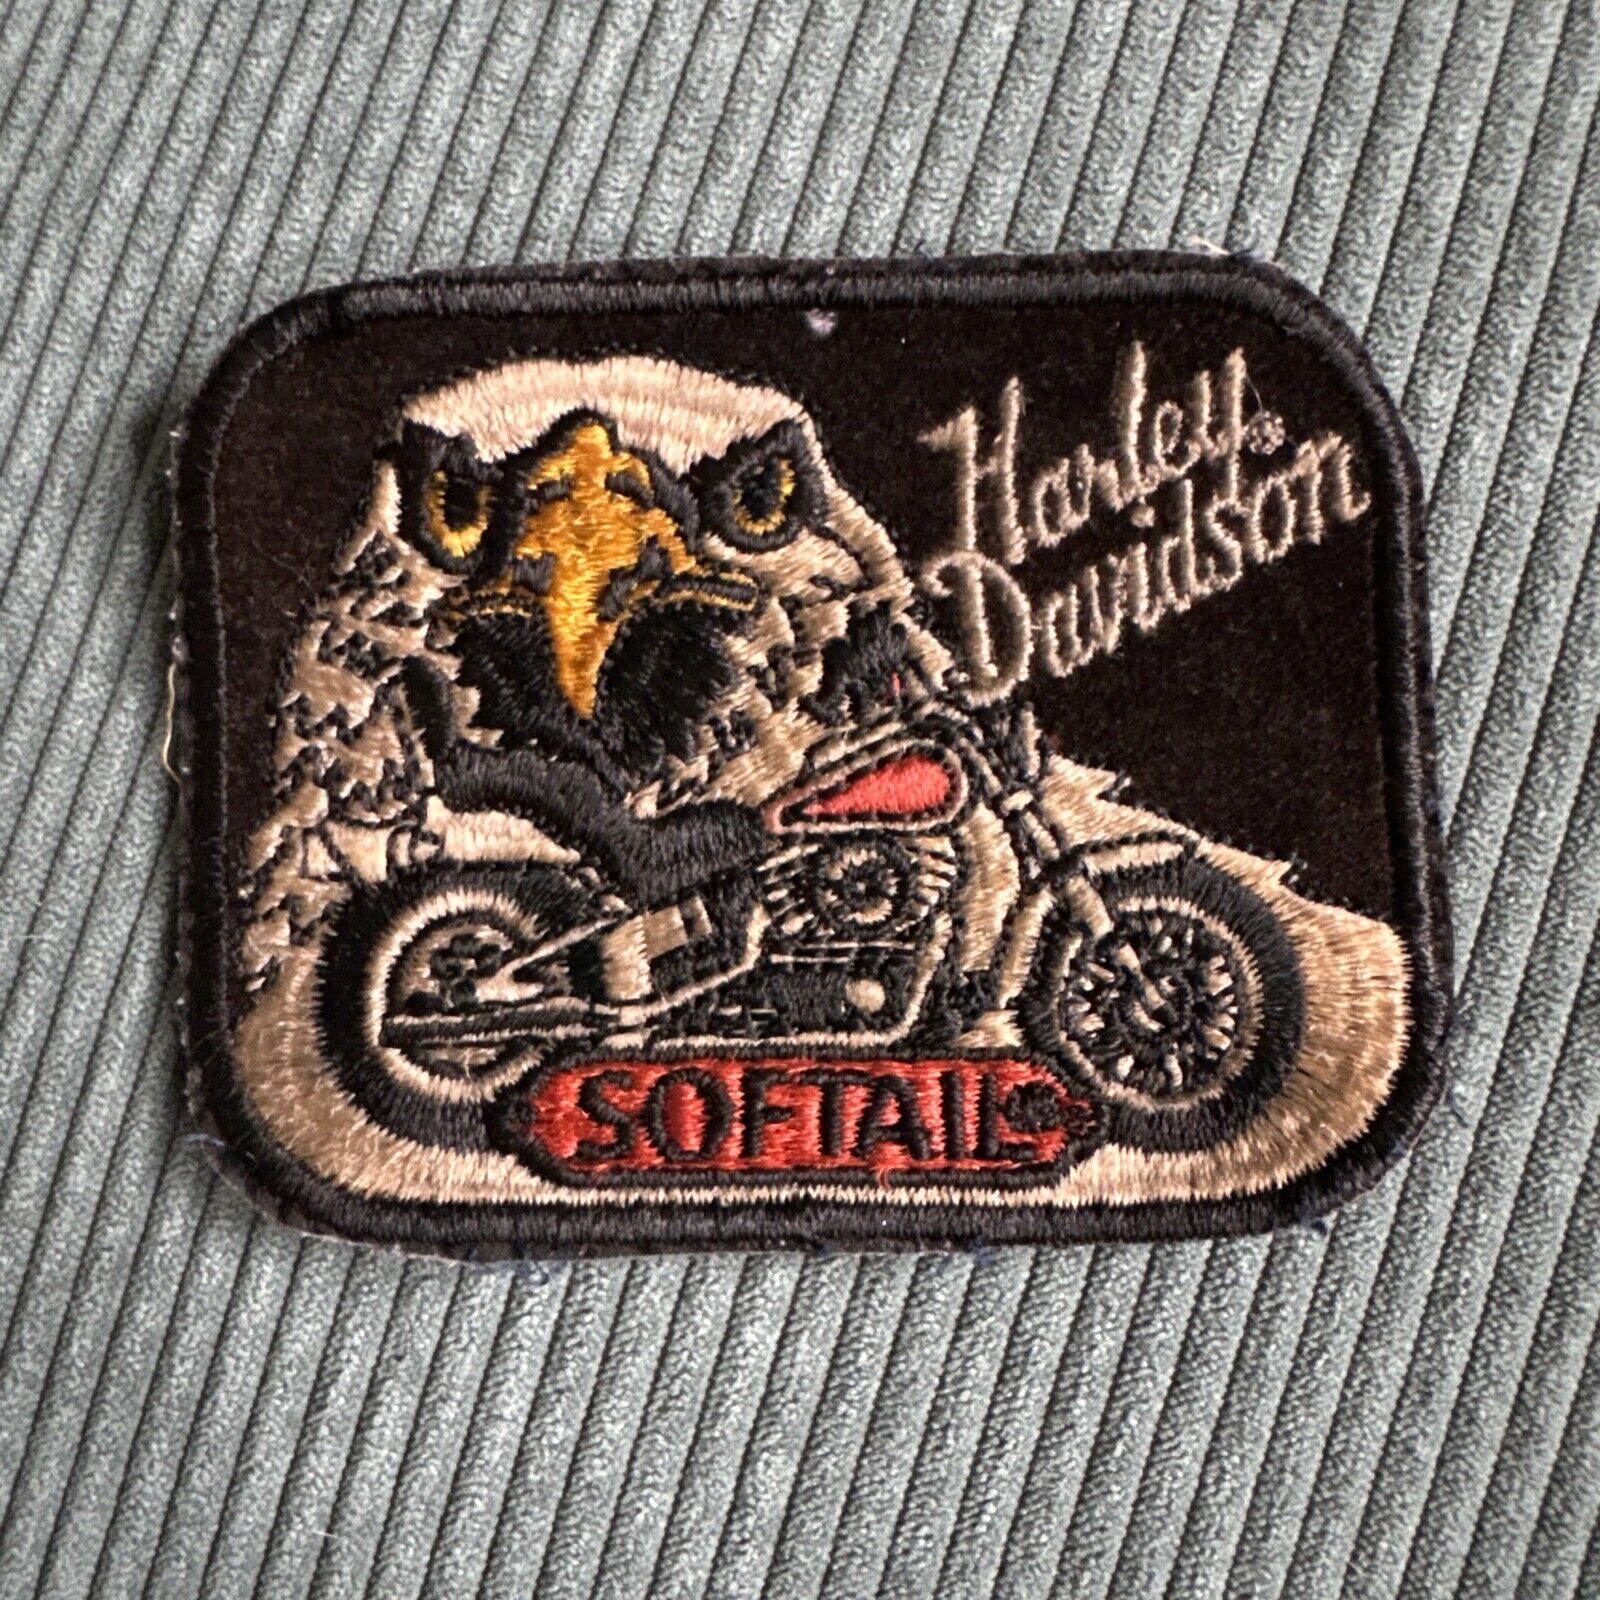 Vintage 1980s Harley Davidson® Eagle Softail Motorcycle Vintage Lg Patch Emblem